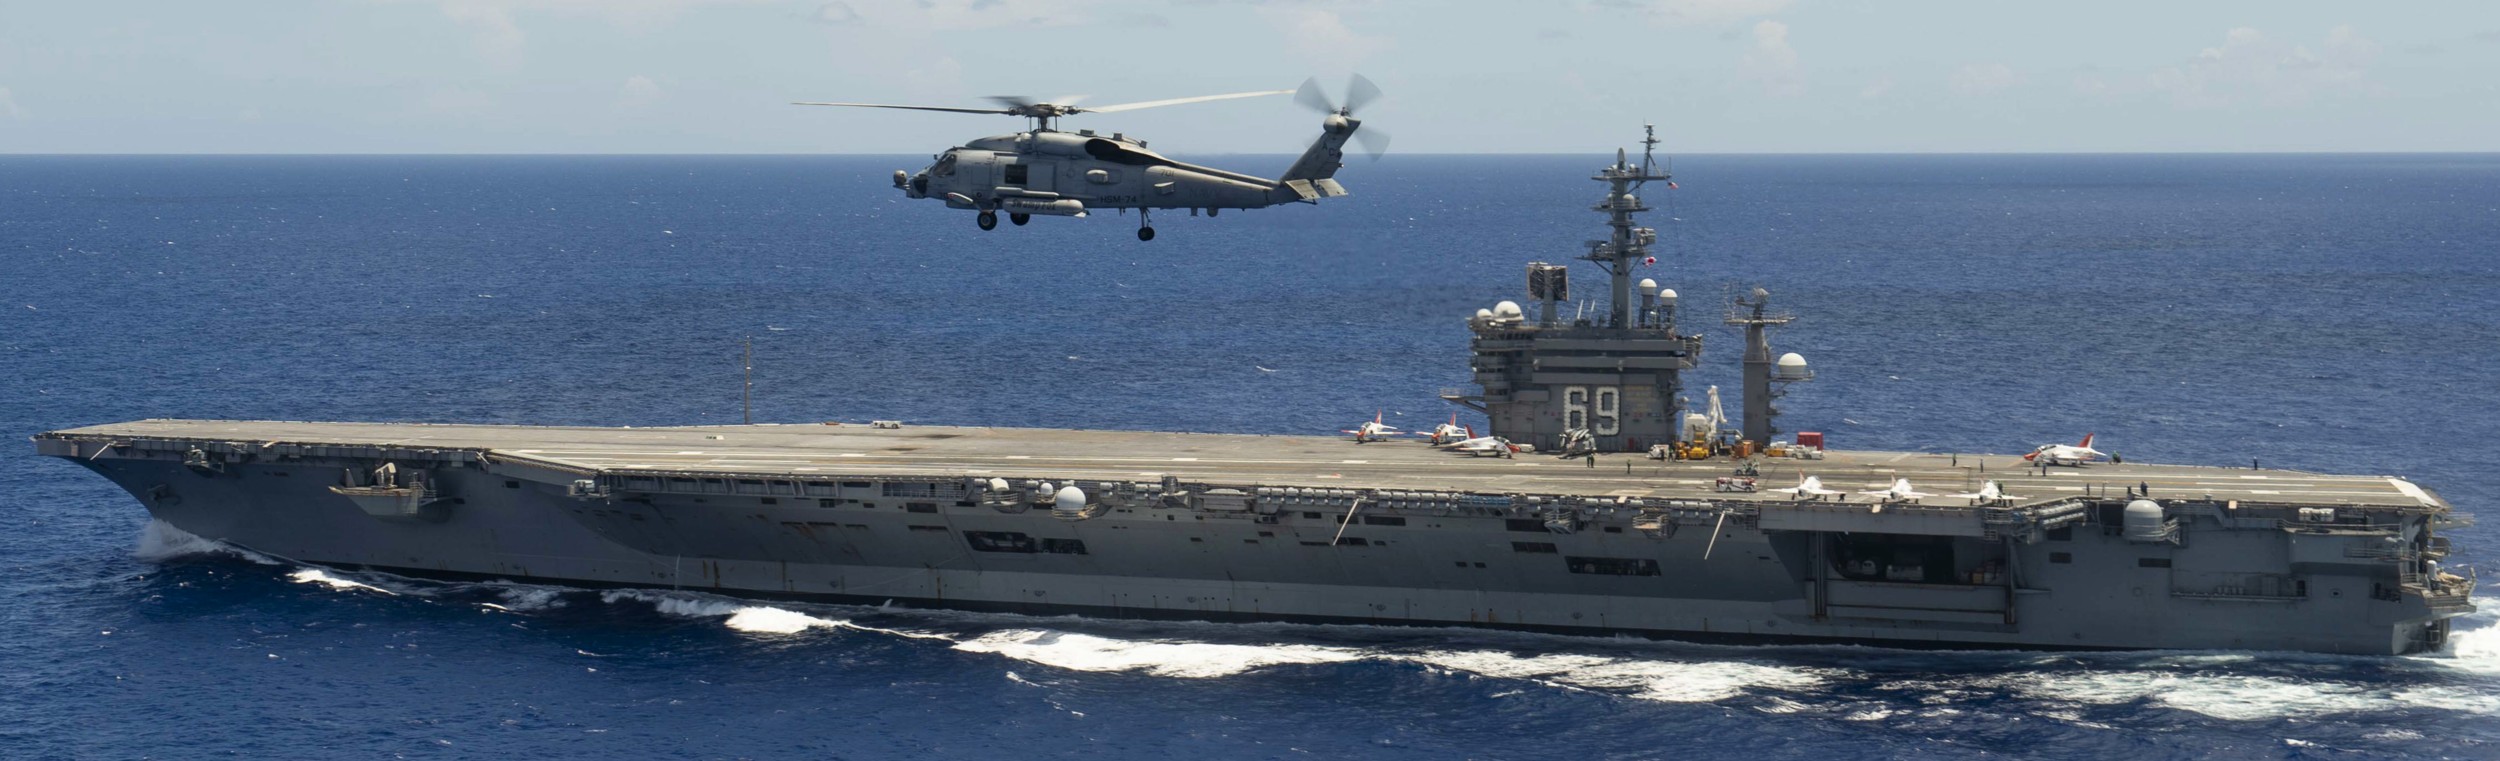 cvn-69 uss dwight d. eisenhower aircraft carrier qualifications us navy 444